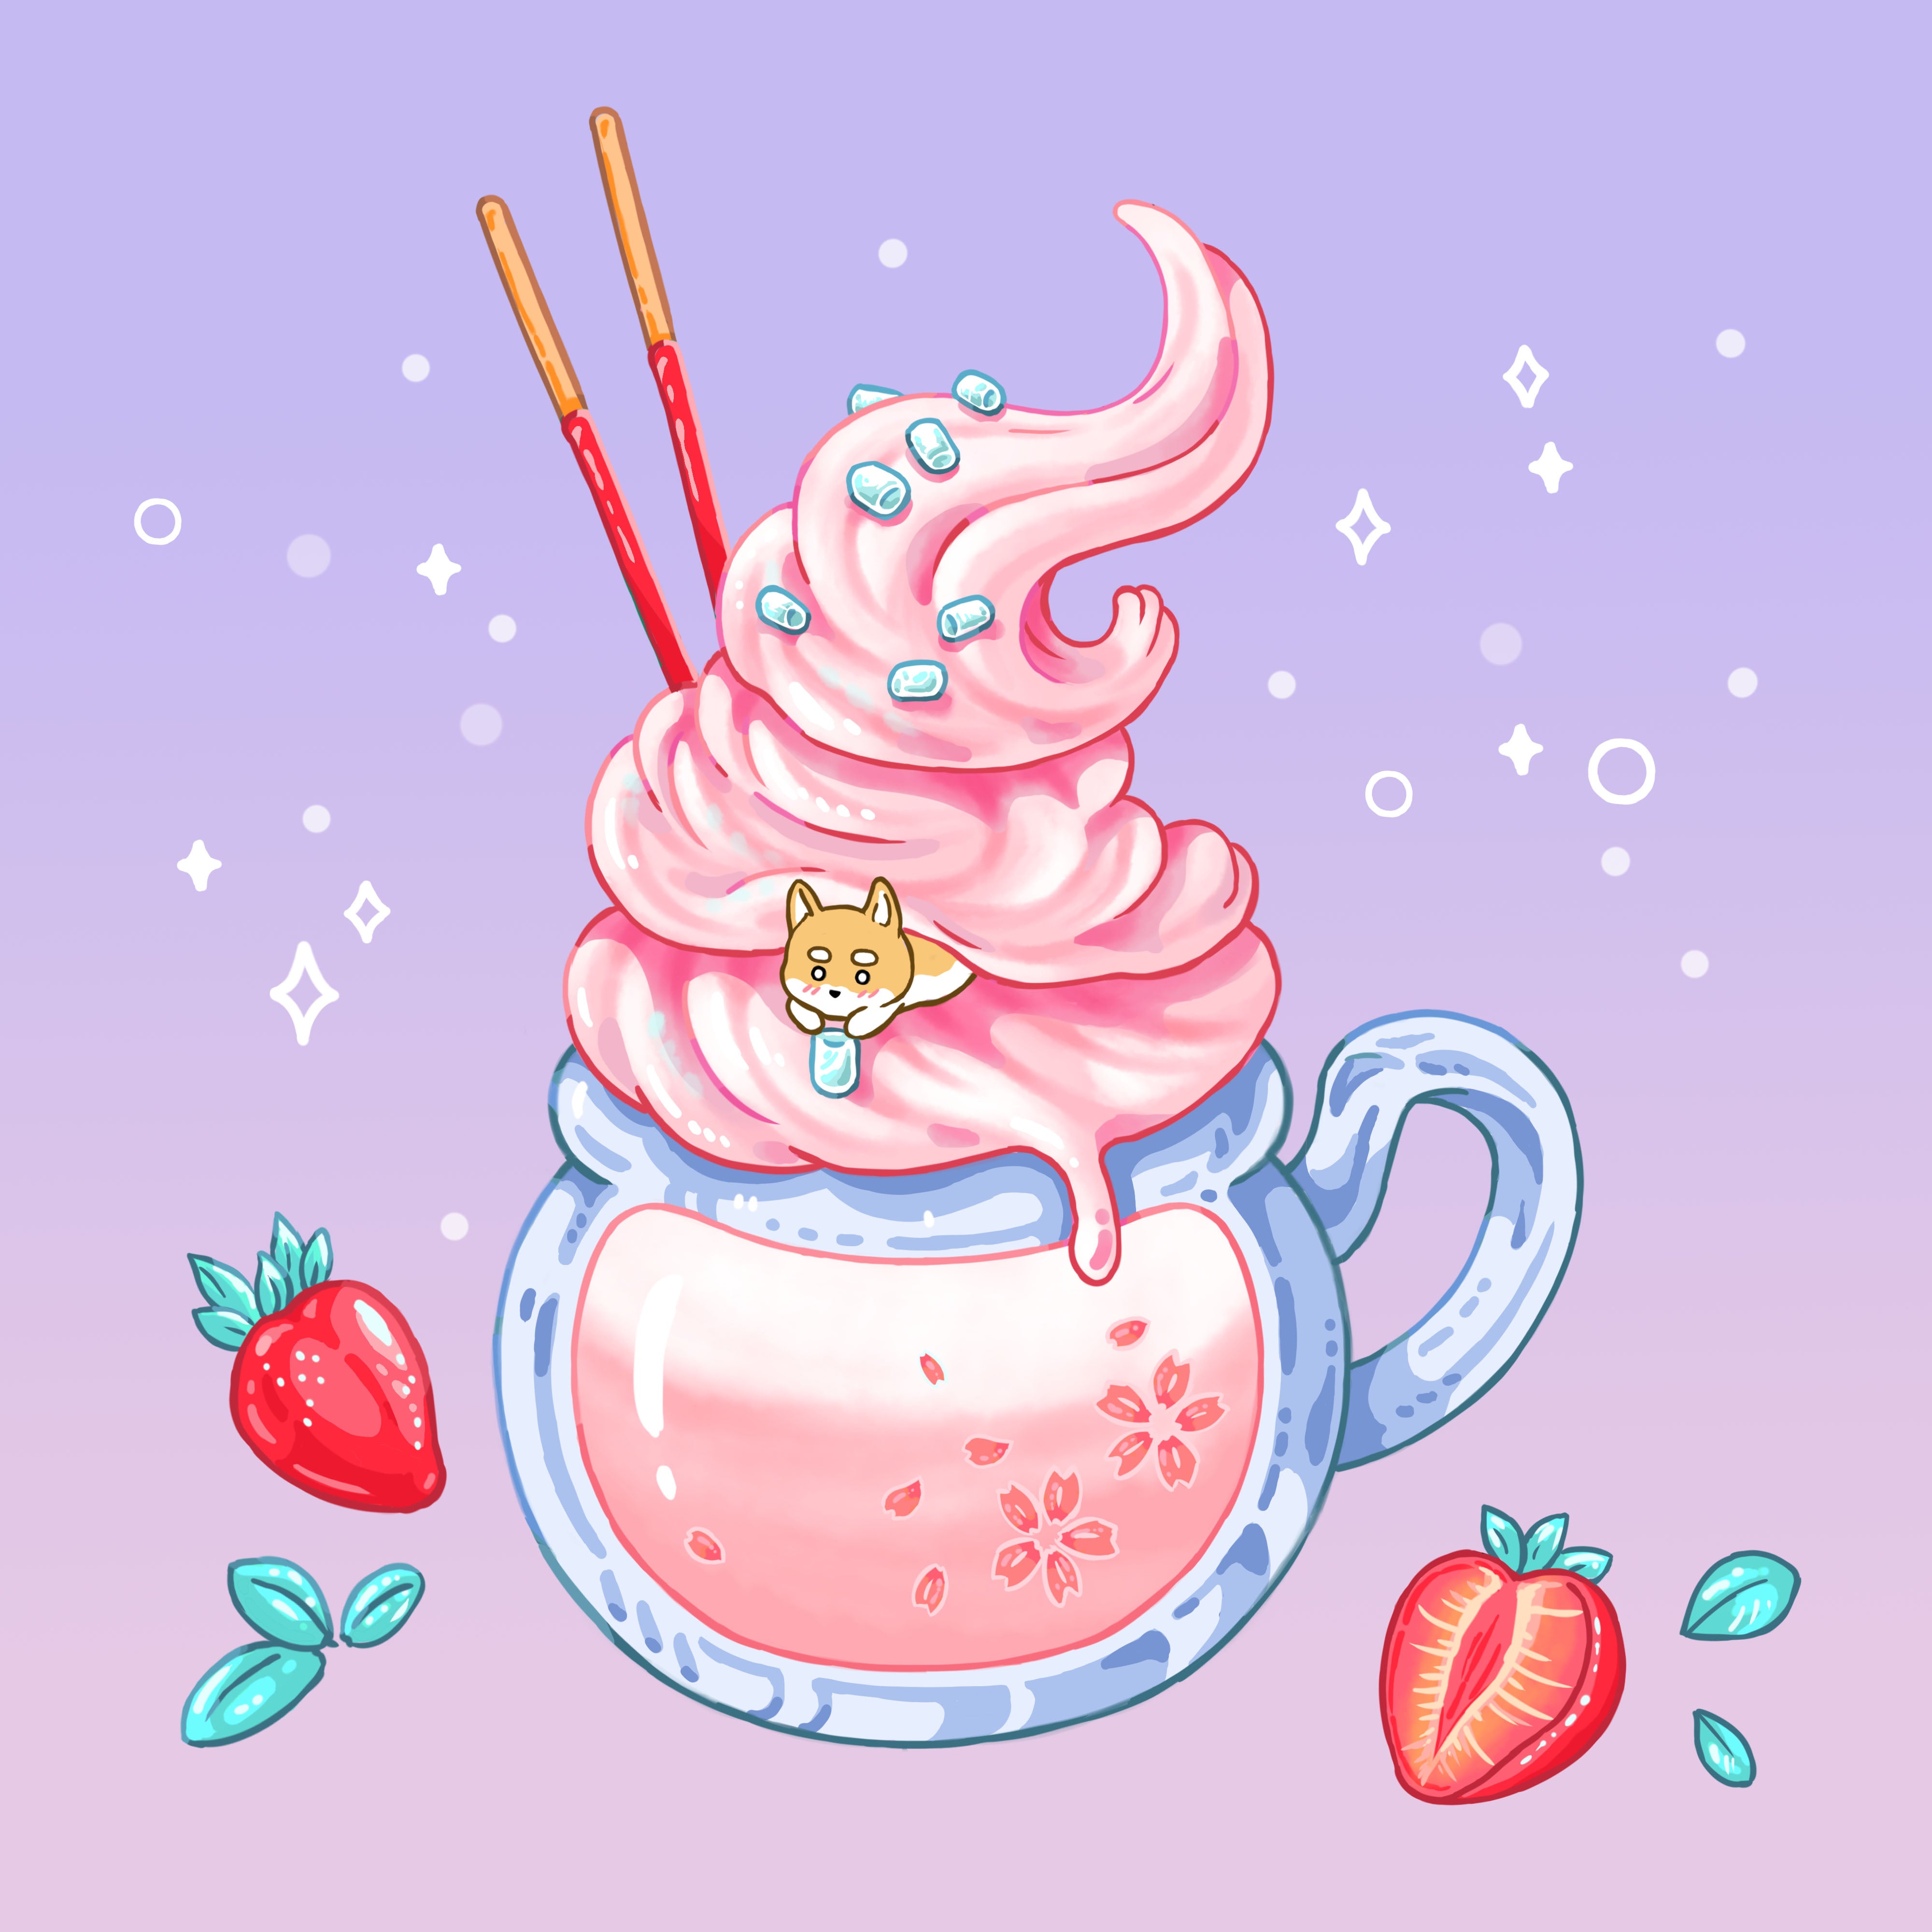 Mochi's Strawberry Delight Print